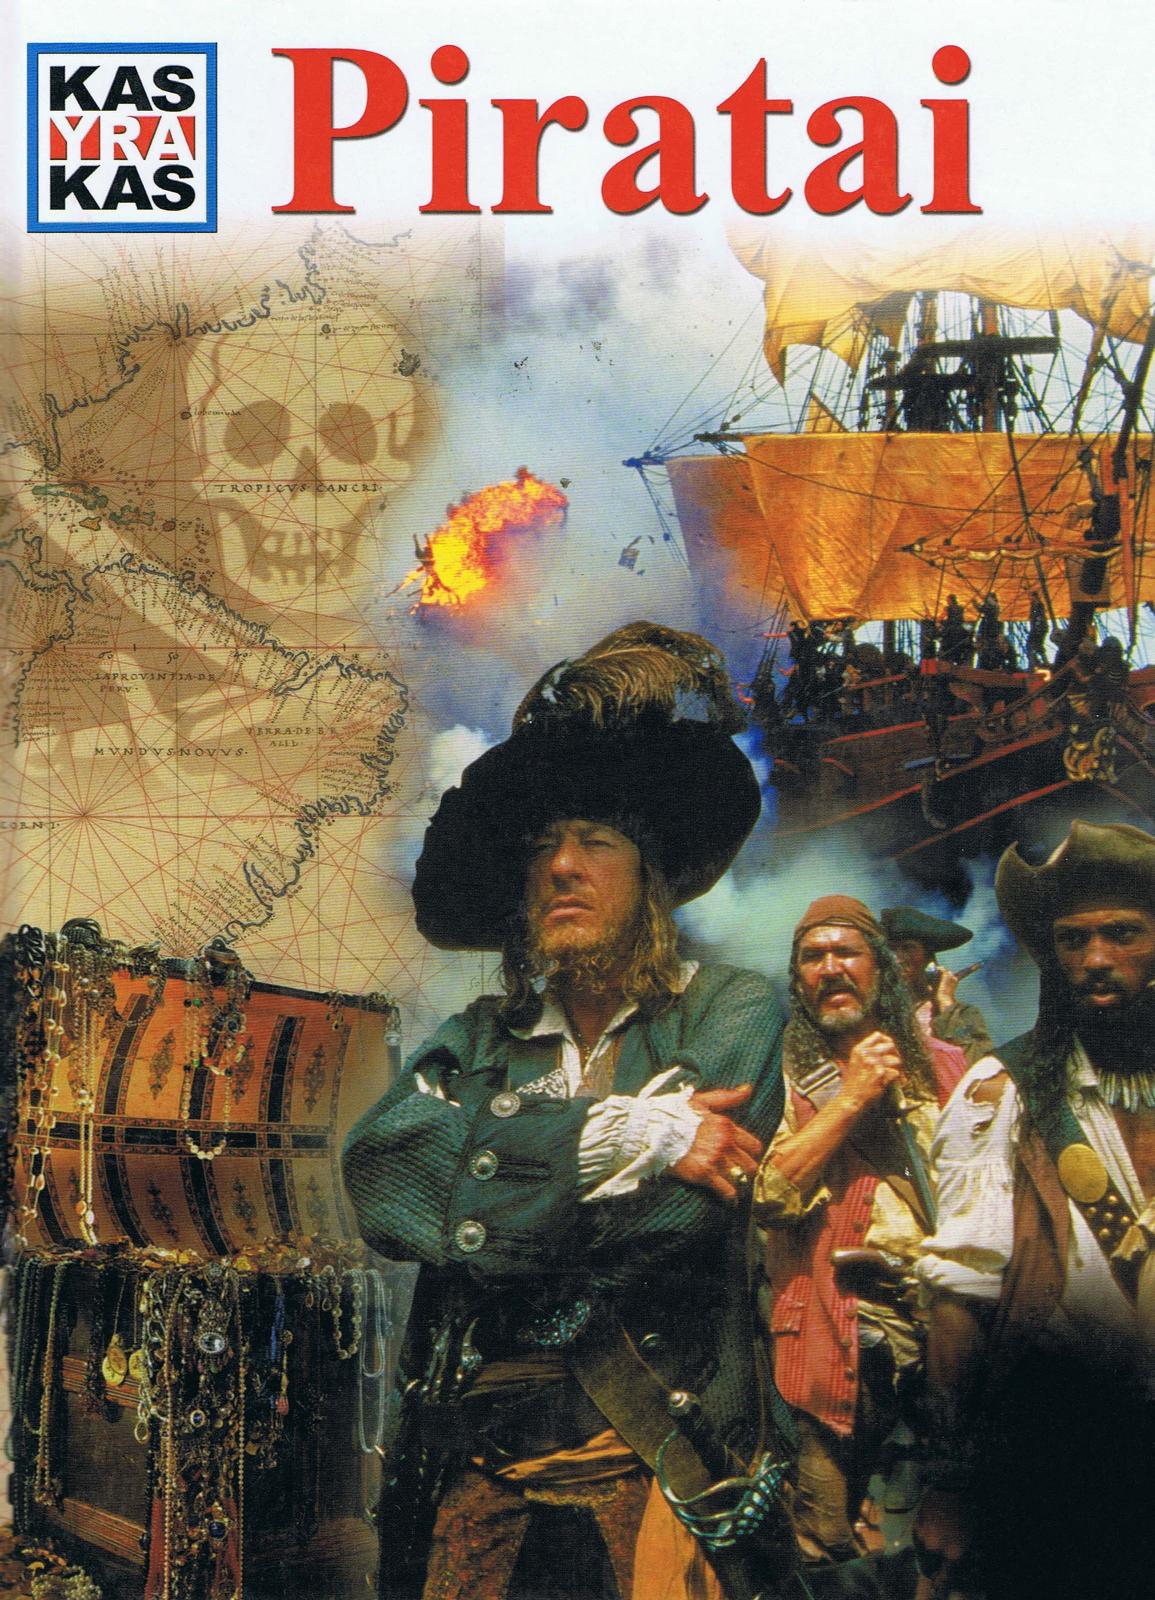 Kas yra kas: Piratai (2006 LT)